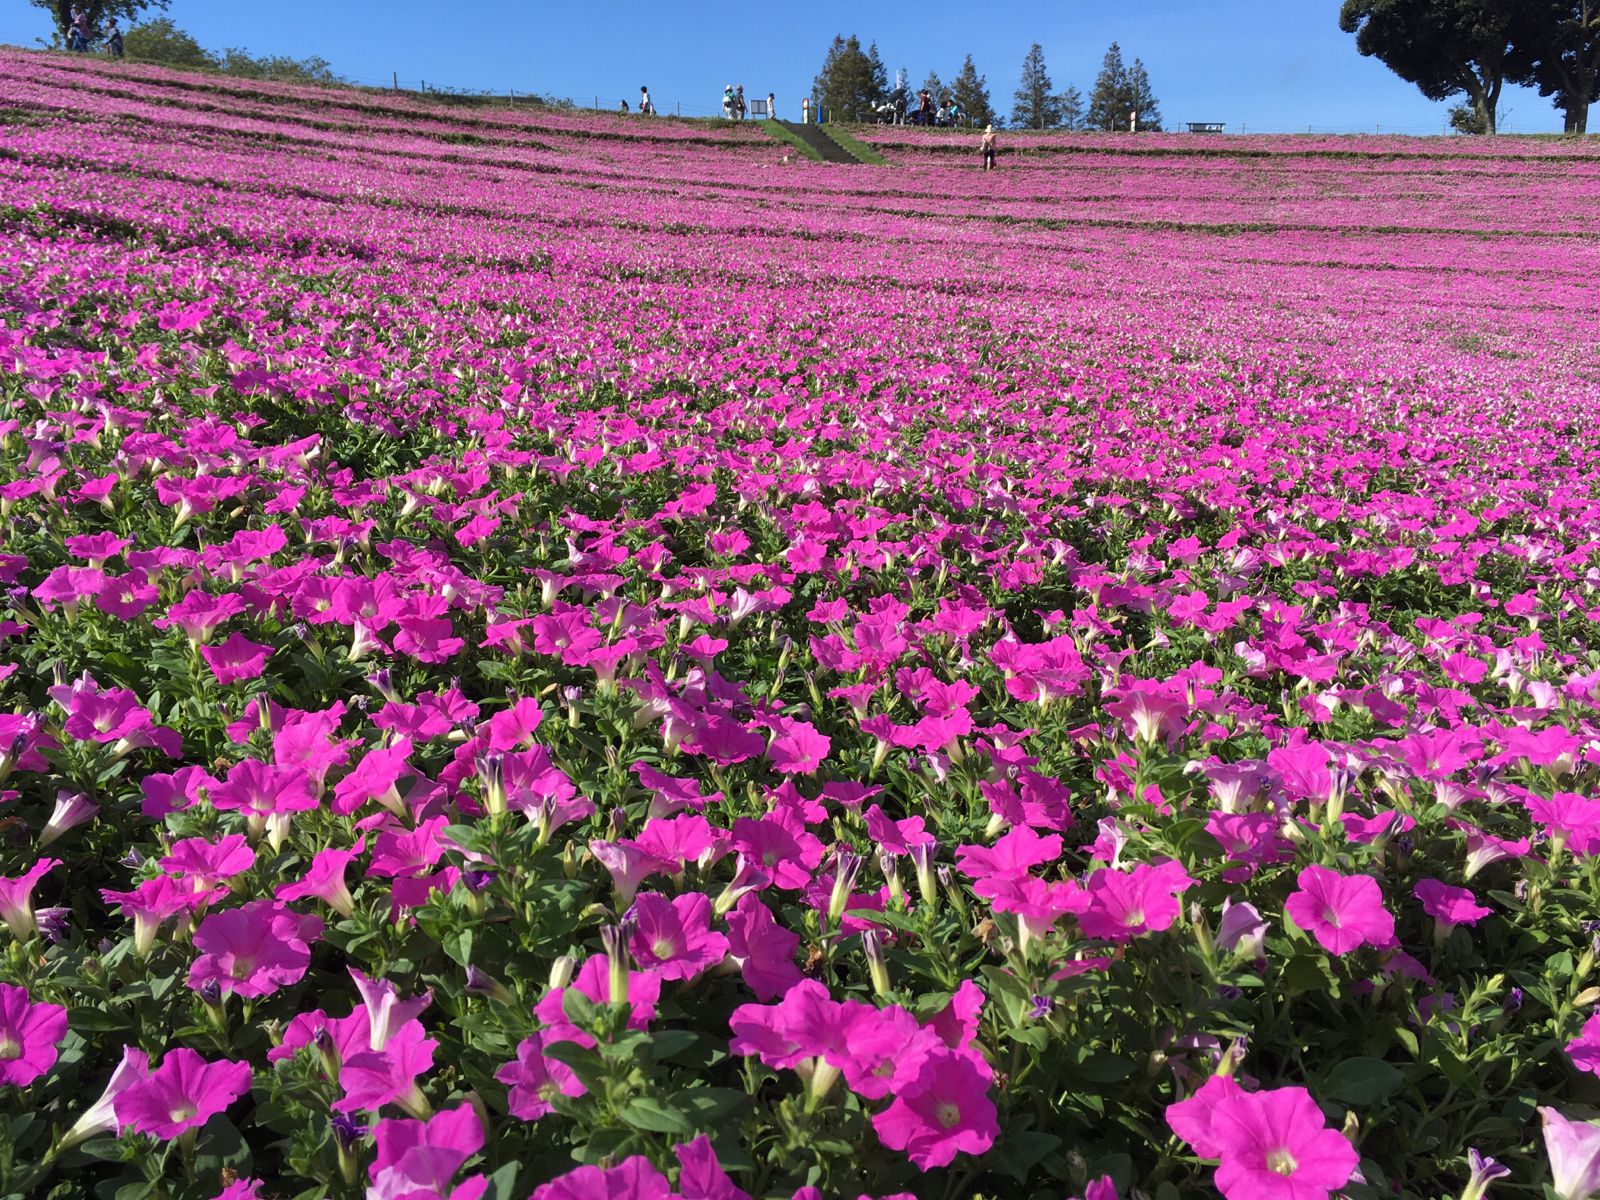 思わず息を飲むピンク色の絶景 マザー牧場で楽しめる 桃色吐息 の花畑とは Retrip リトリップ